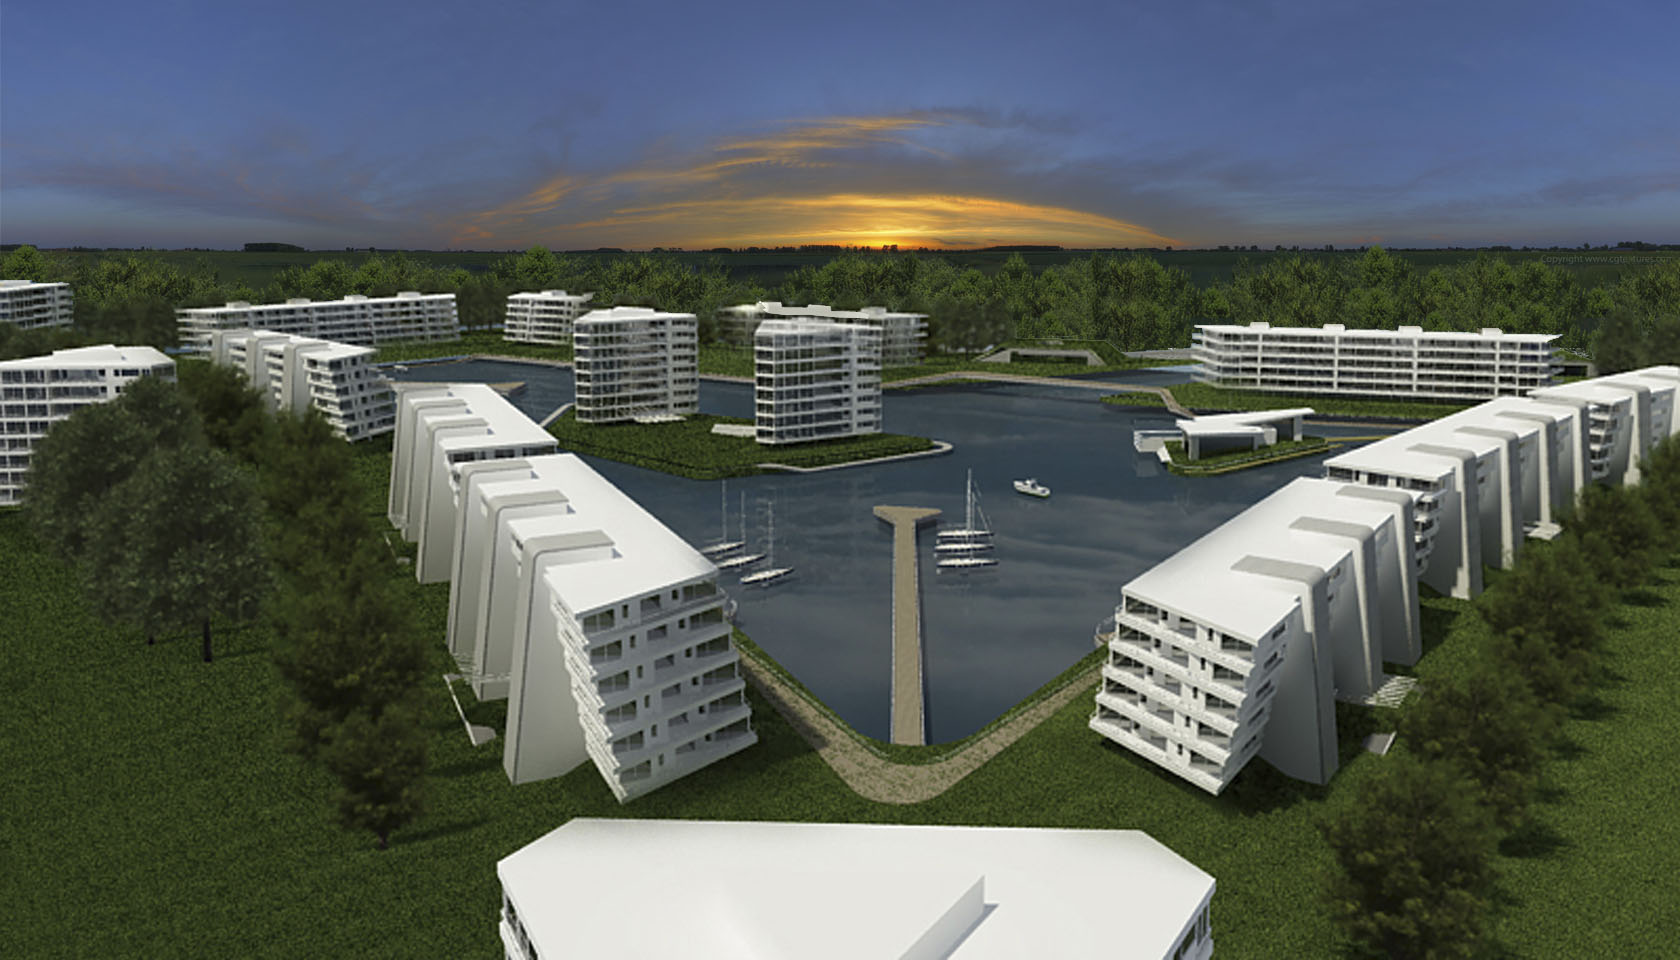 Complejo de vivienda en Nordelta, edificios con visuales al lago